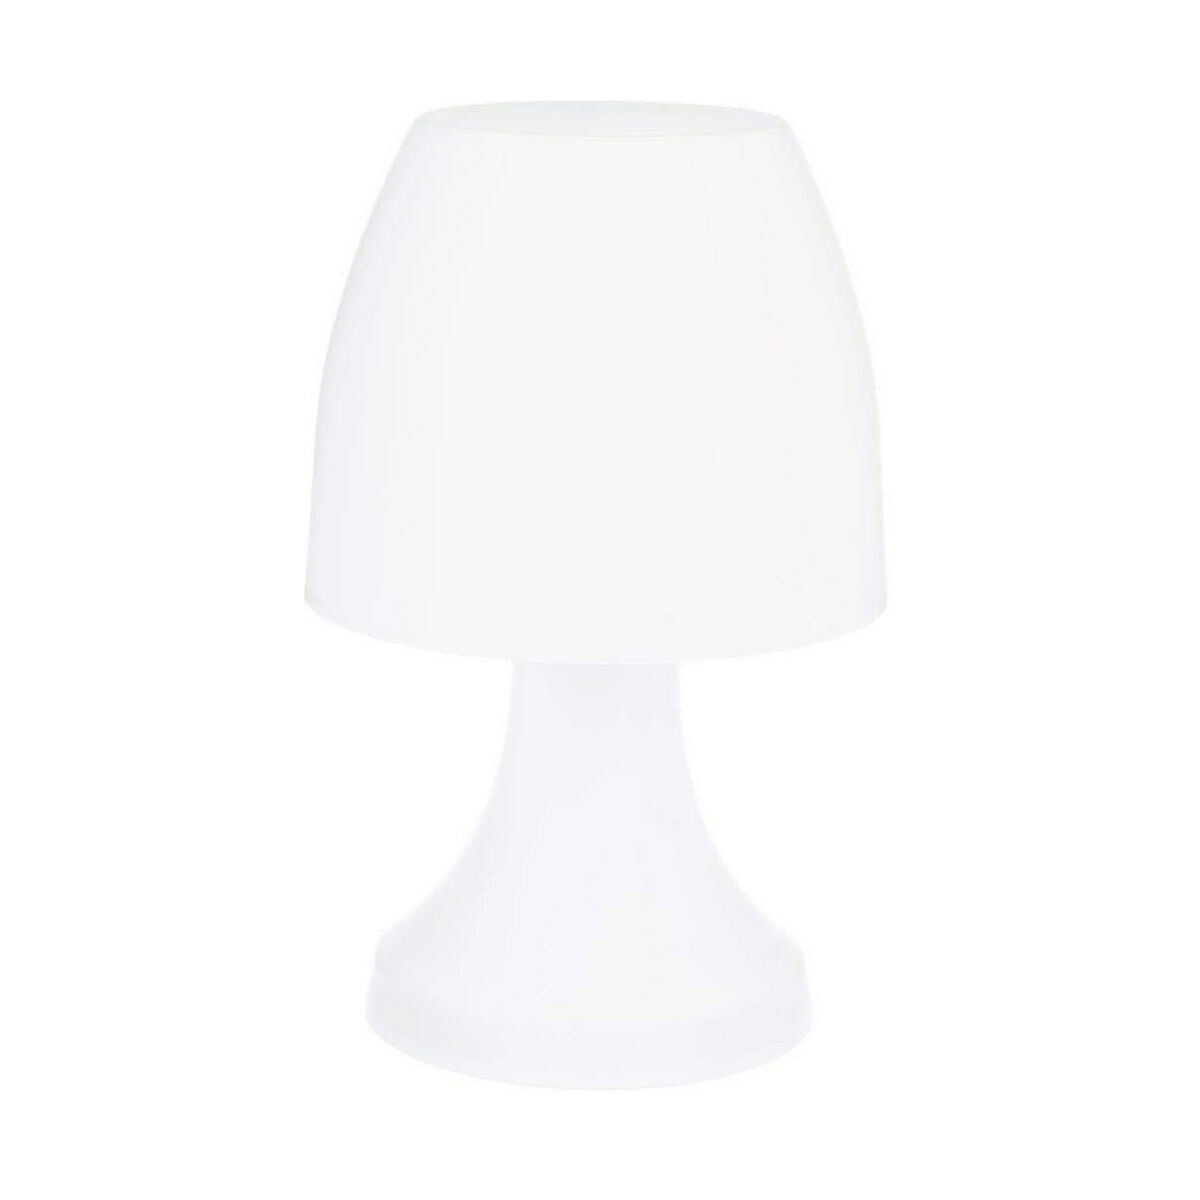 Table lamp White 220-240 V Polymer (17.5 x 27.5 cm)